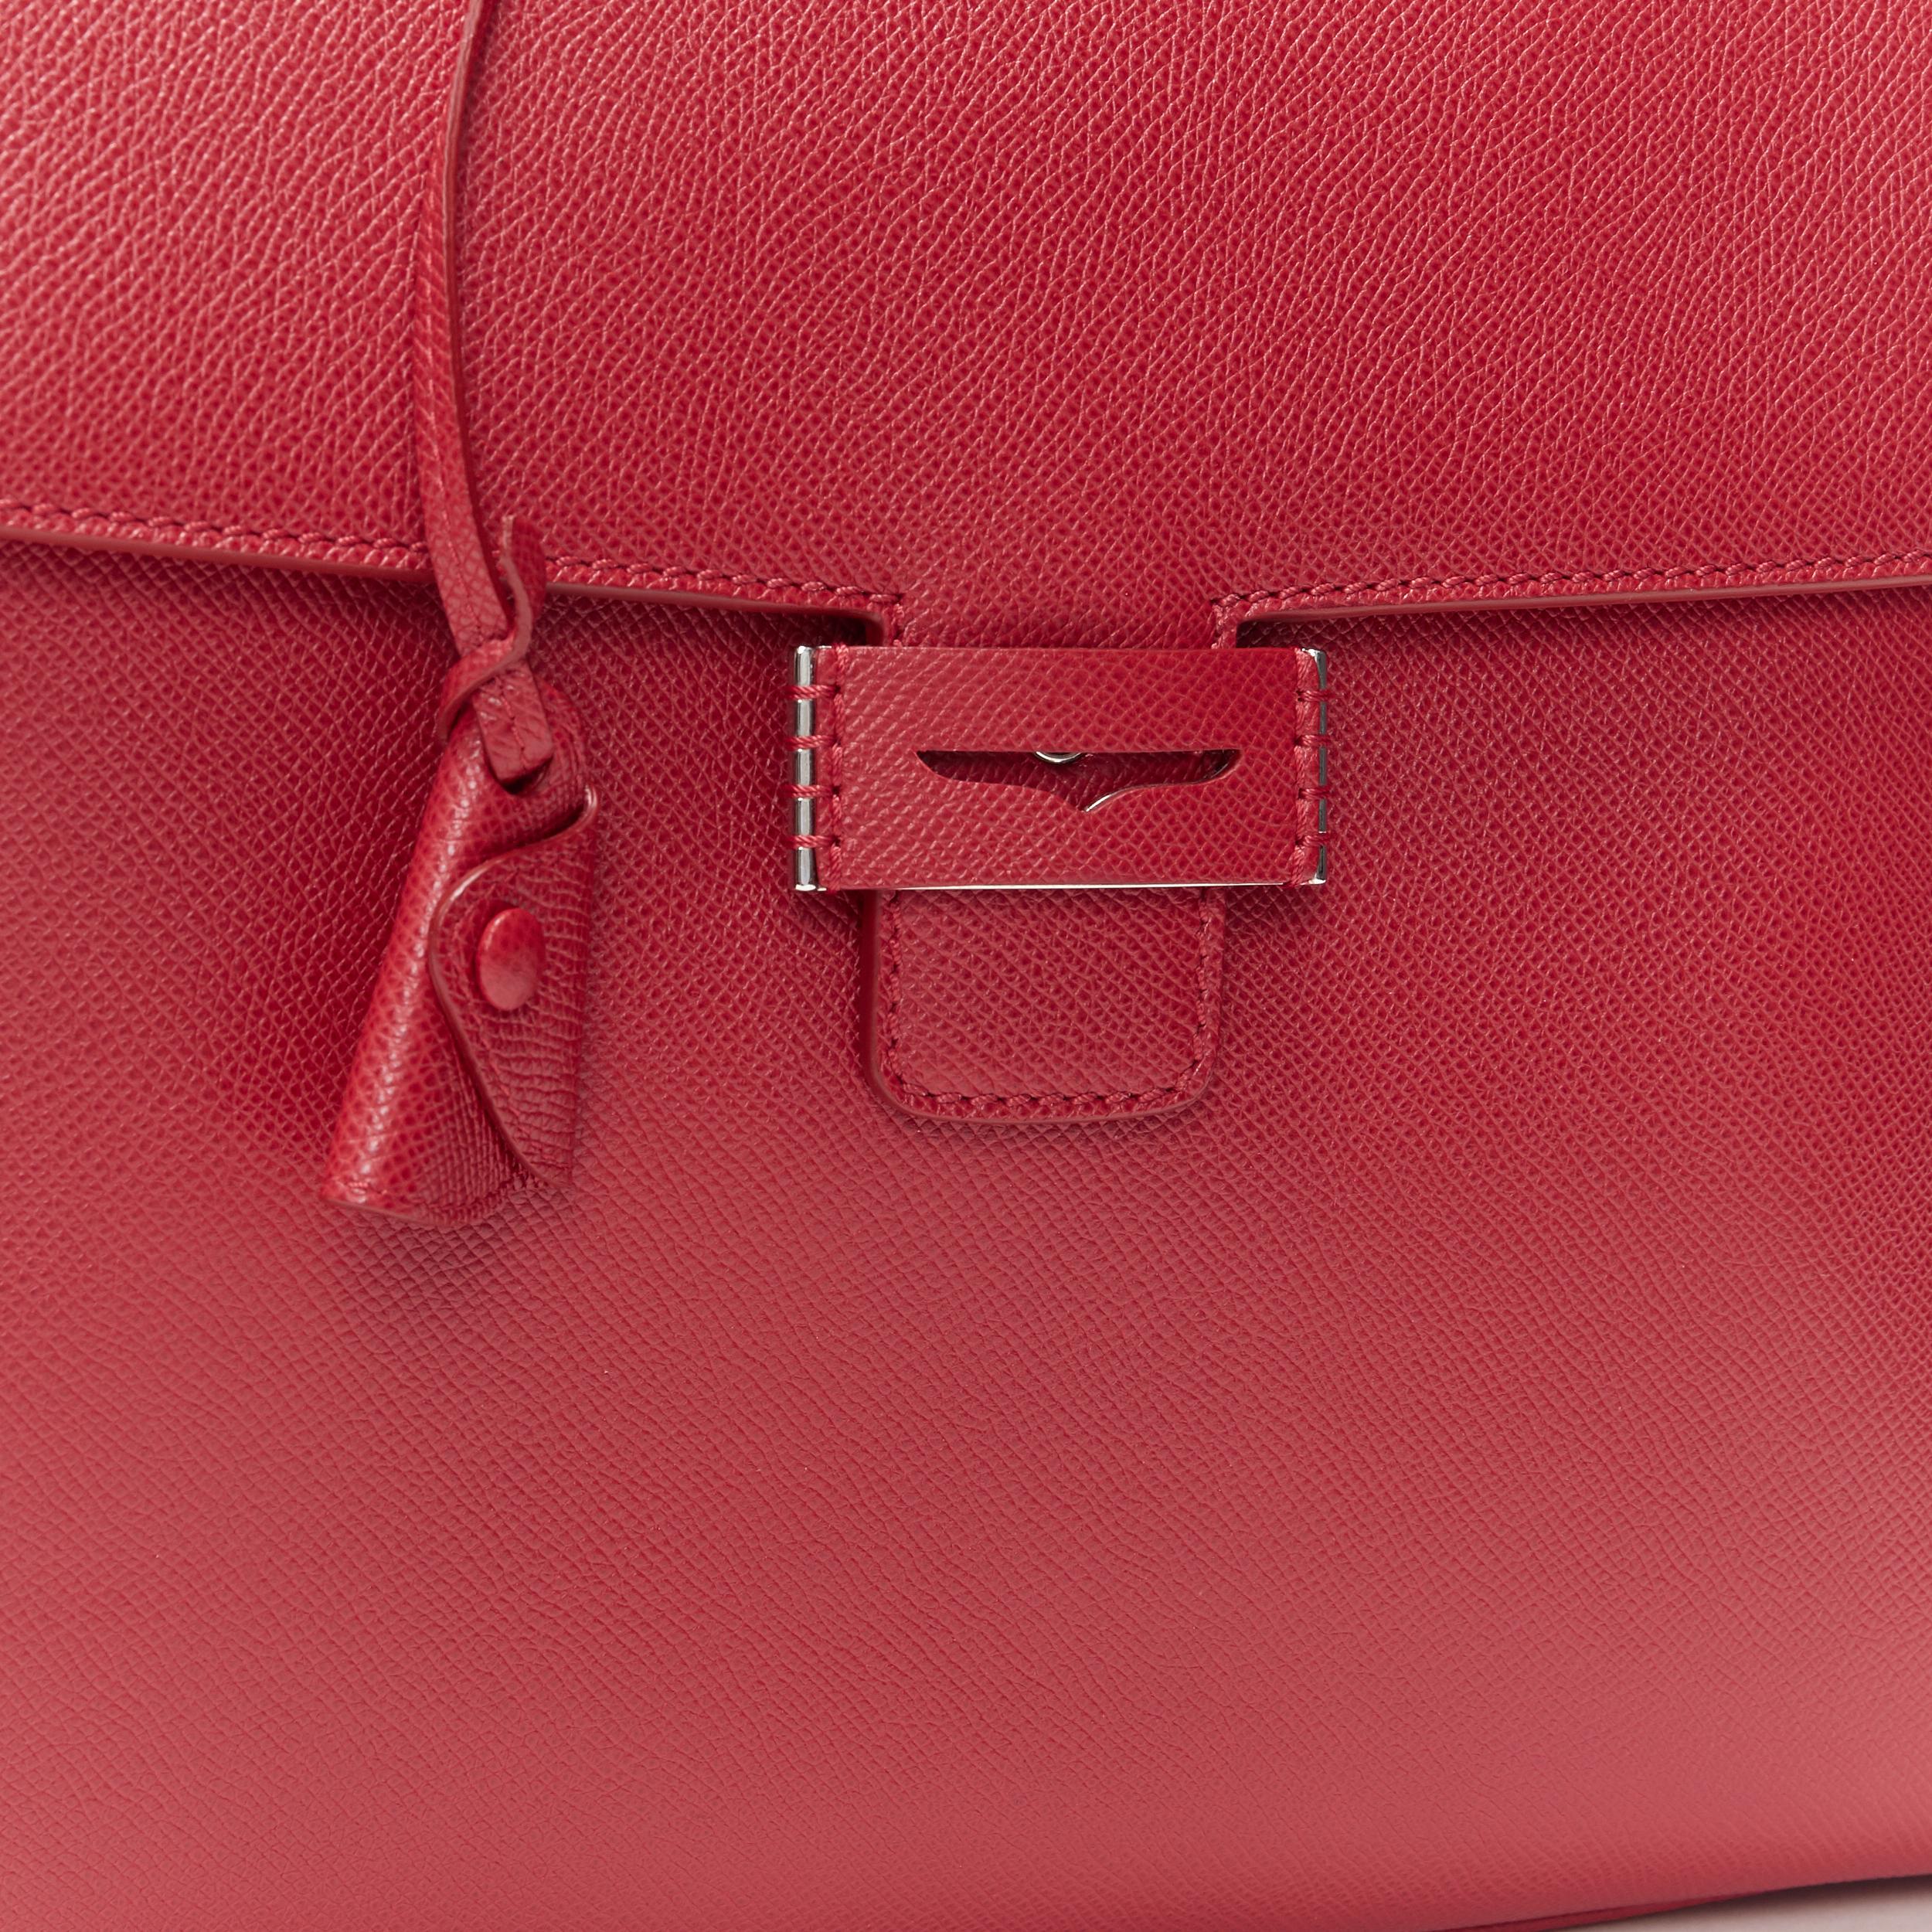 MYRIAM SCHAEFER Byron red leather cut out top handle satchel shoulder bag 1